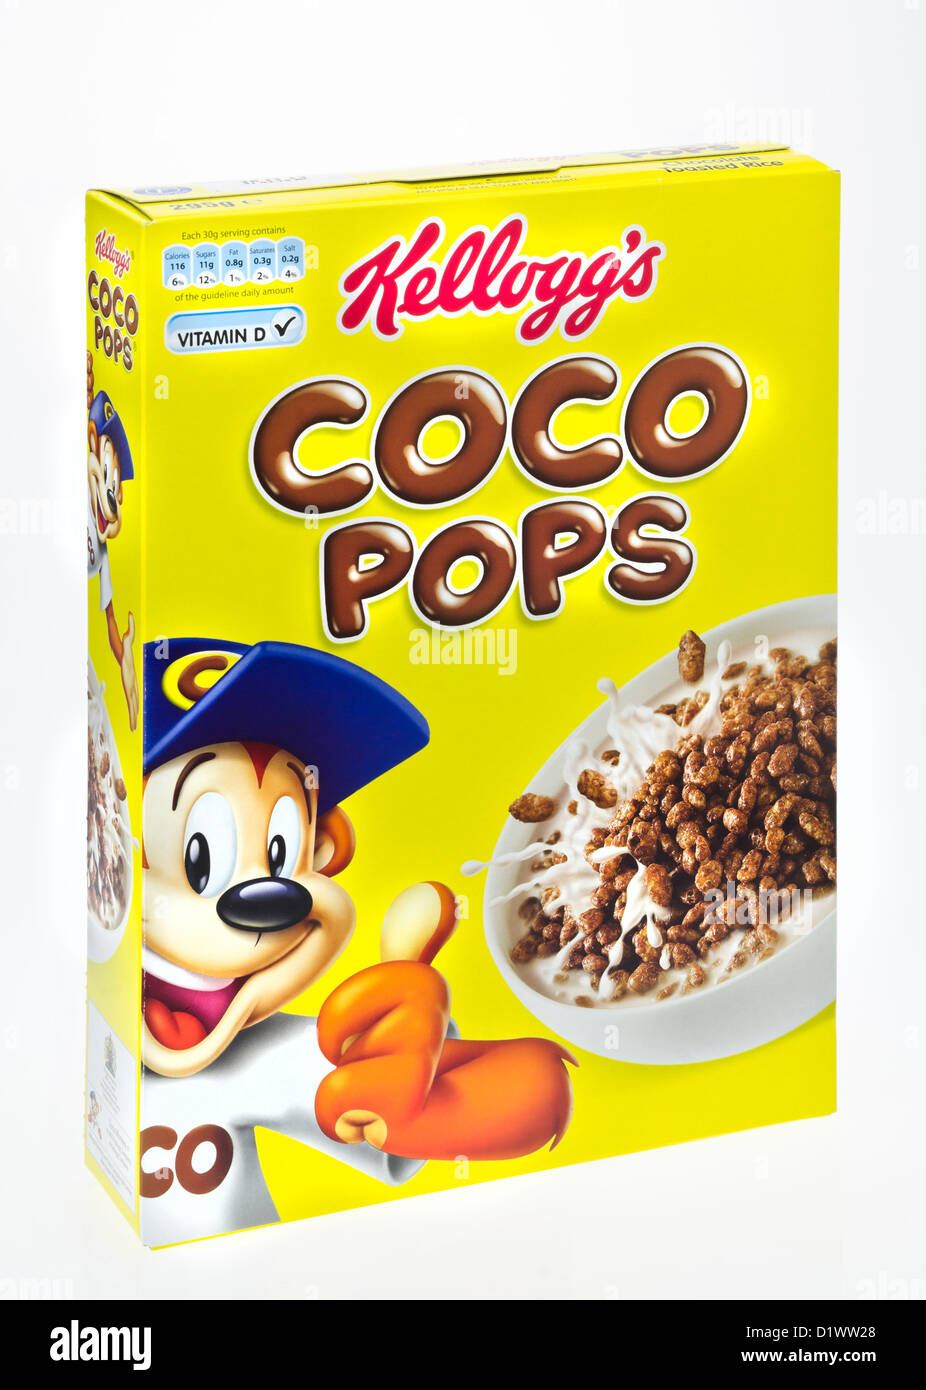 Scatola di Kellogg's coco pops cereali per la prima colazione. Foto Stock